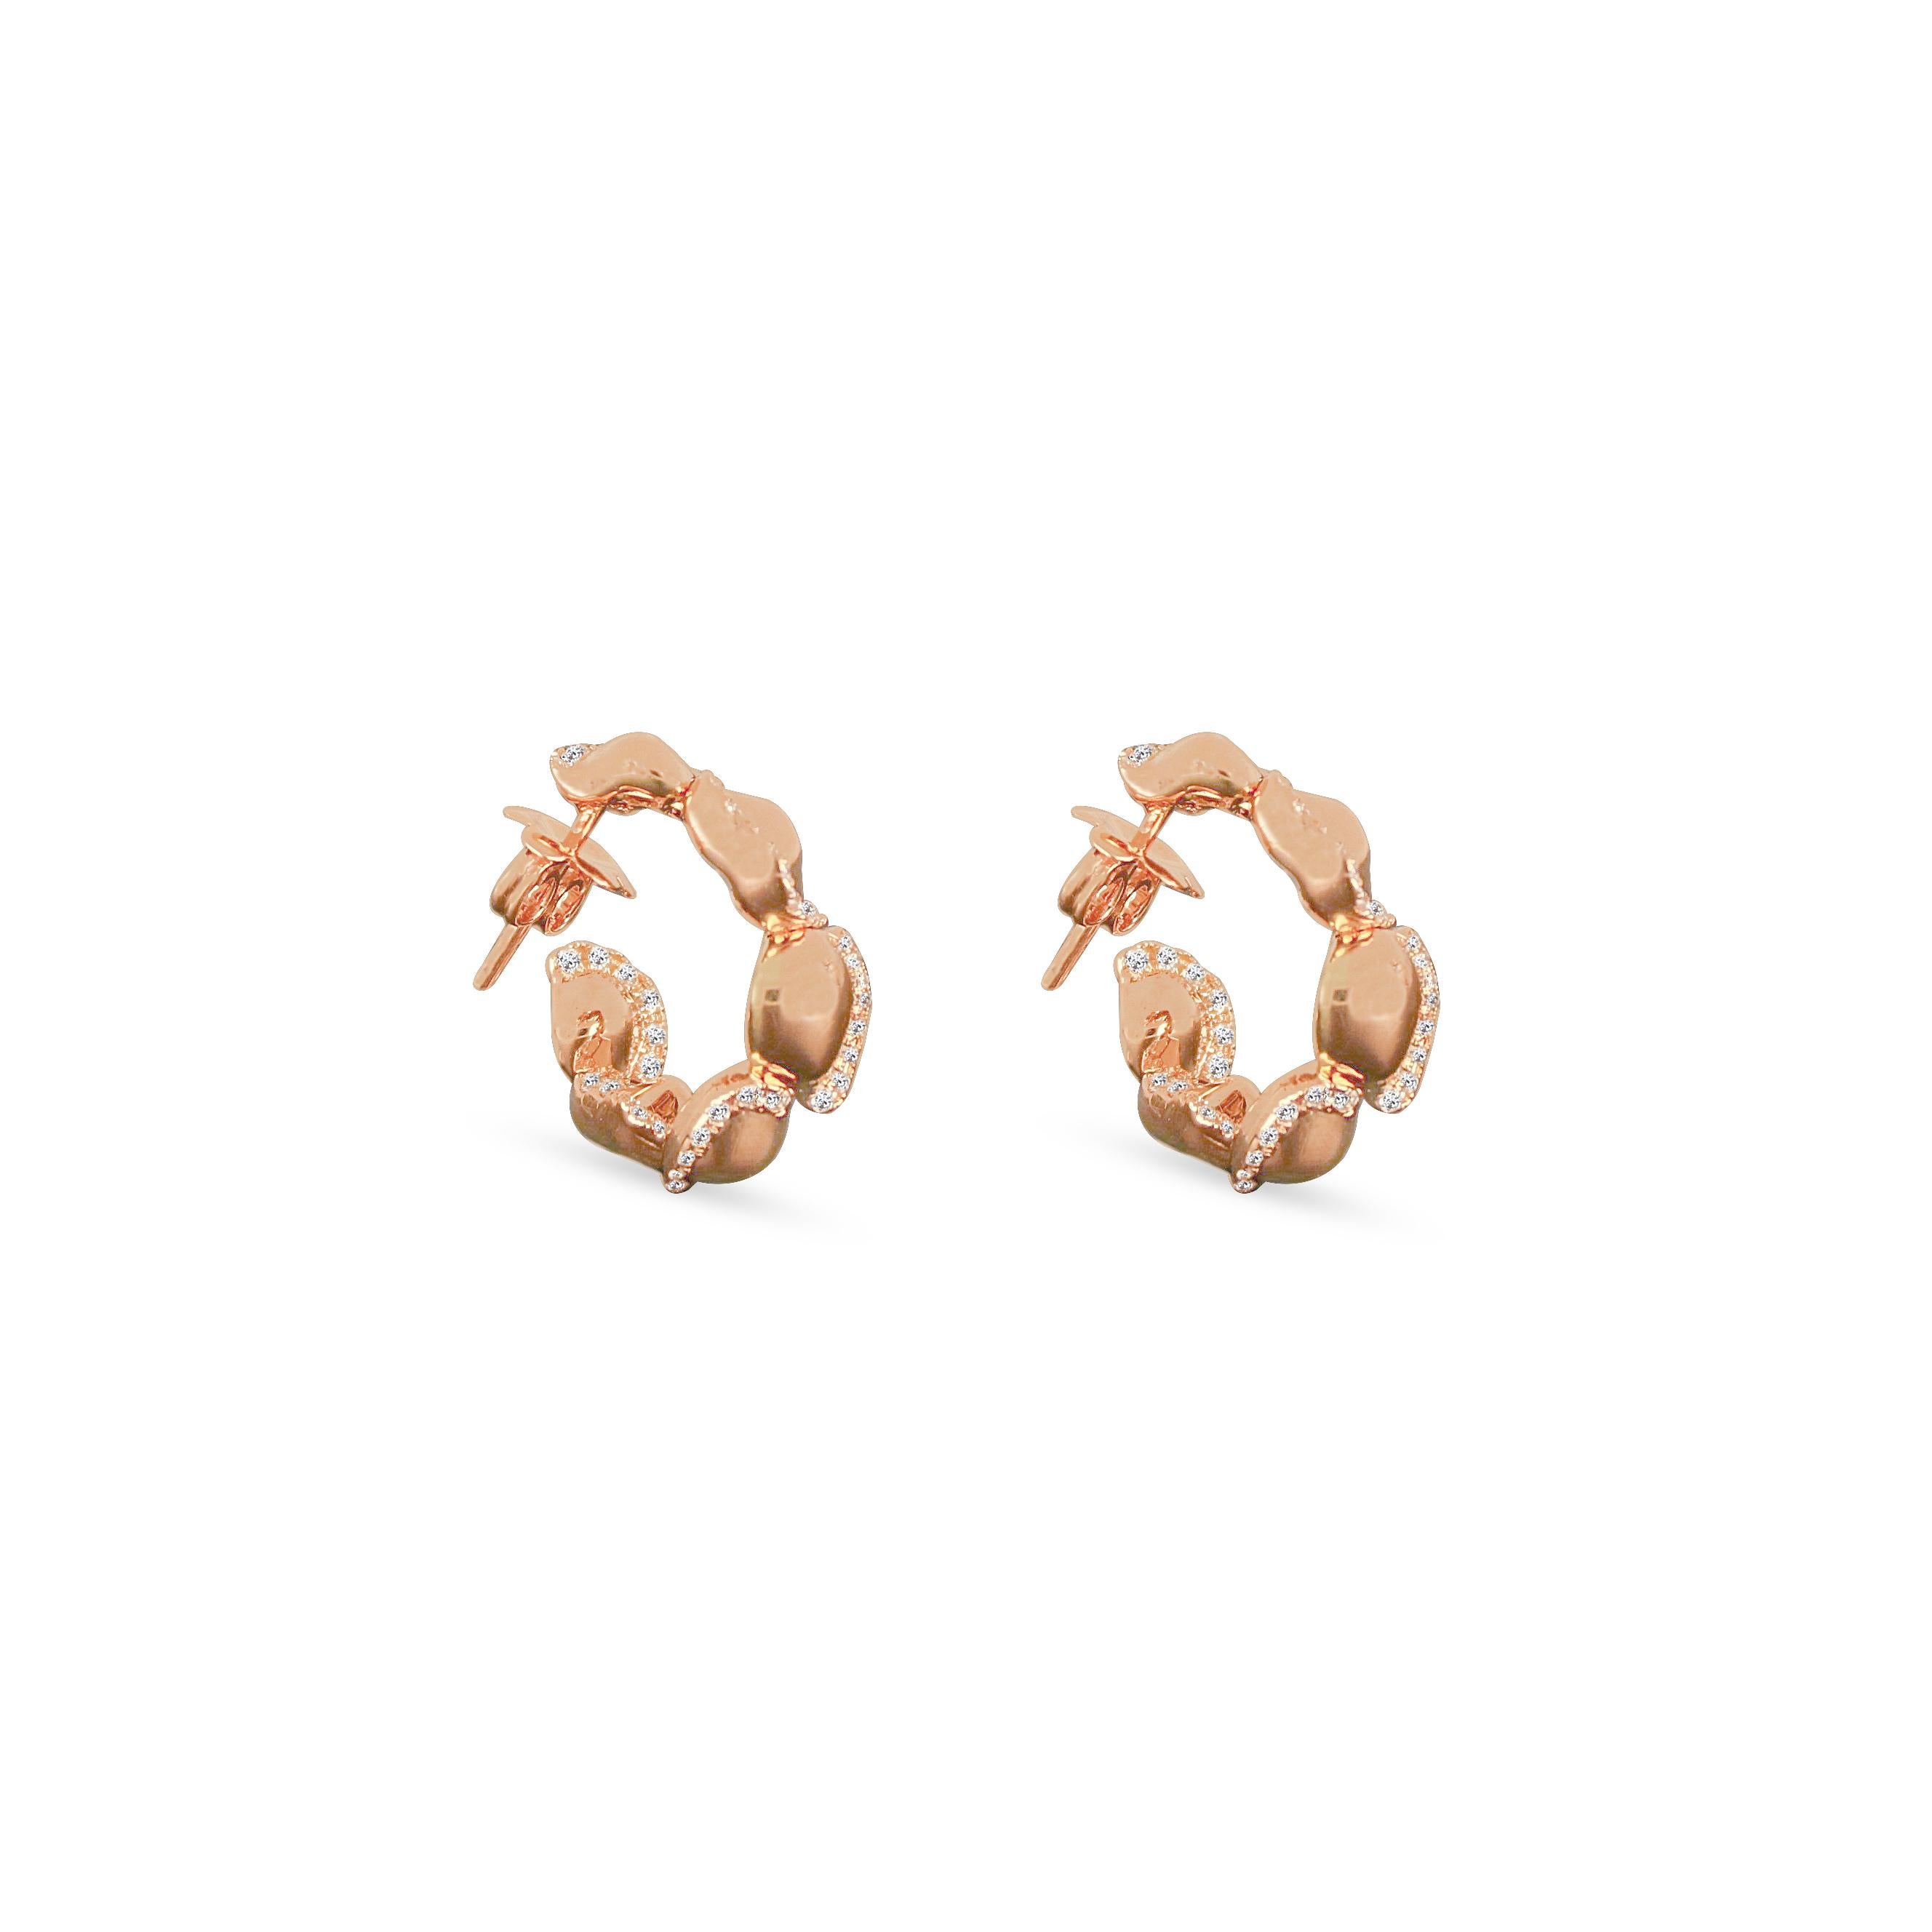 Les boucles d'oreilles de la Collection S'inspirent des motifs et des marques du désert. L'entrelacement des diamants ronds les plus fins et des pépites d'or rose crée un écho aux nombreuses histoires des femmes résilientes du désert. 

-	Poids :